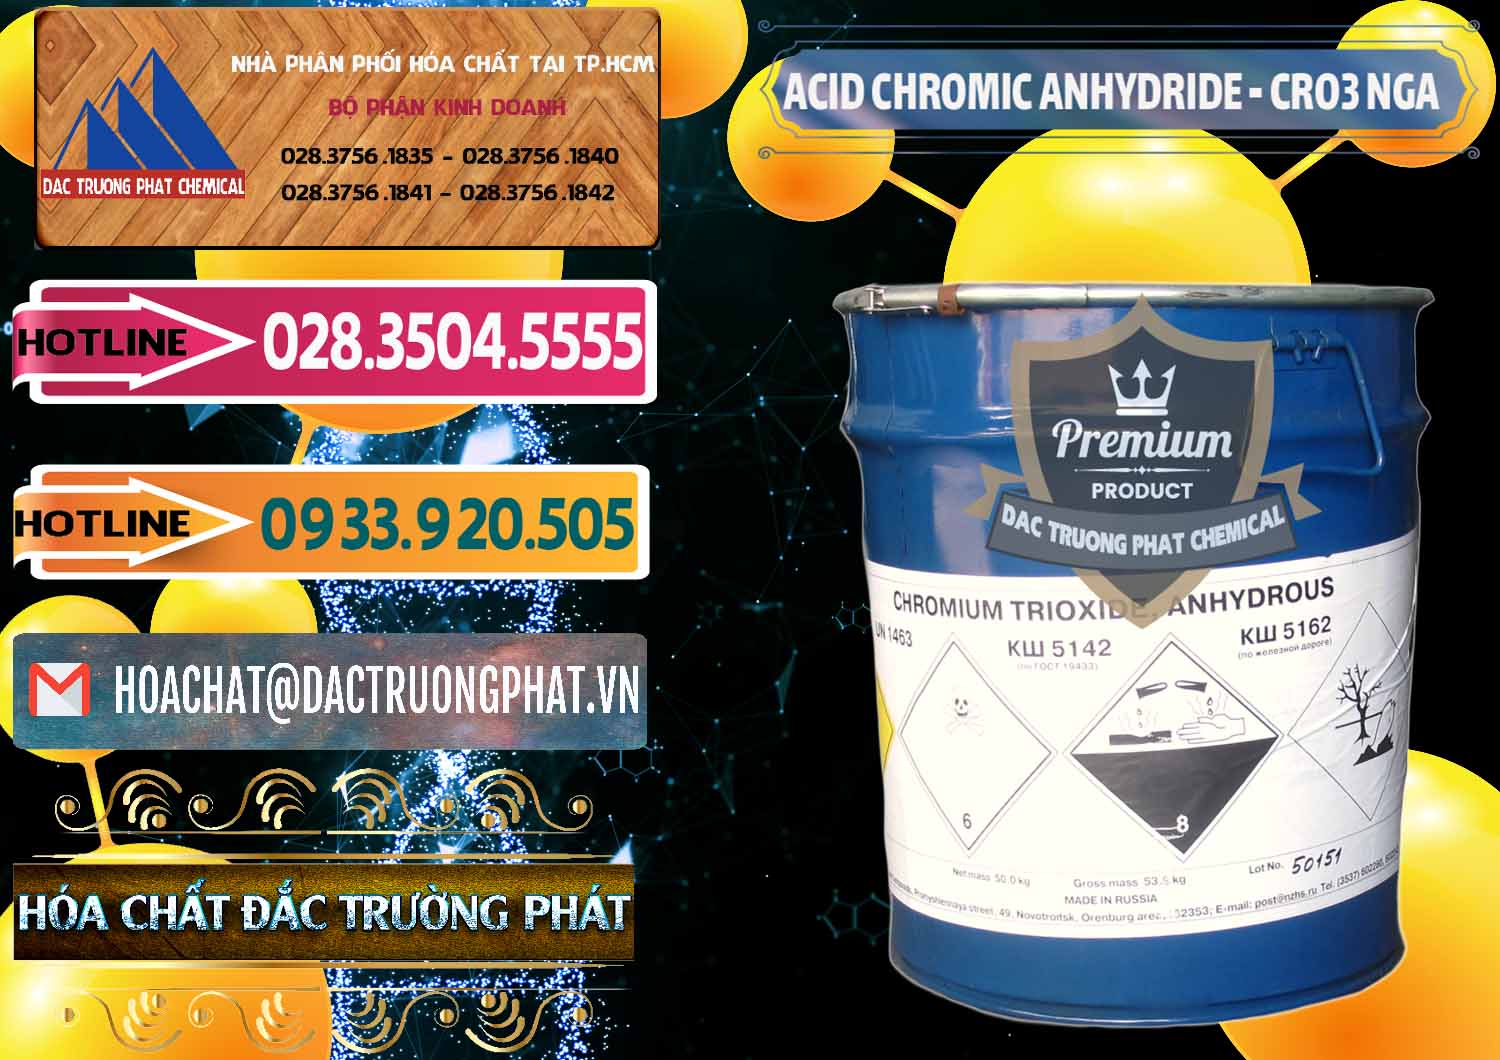 Phân phối ( bán ) Acid Chromic Anhydride - Cromic CRO3 Nga Russia - 0006 - Nơi chuyên cung cấp ( bán ) hóa chất tại TP.HCM - dactruongphat.vn